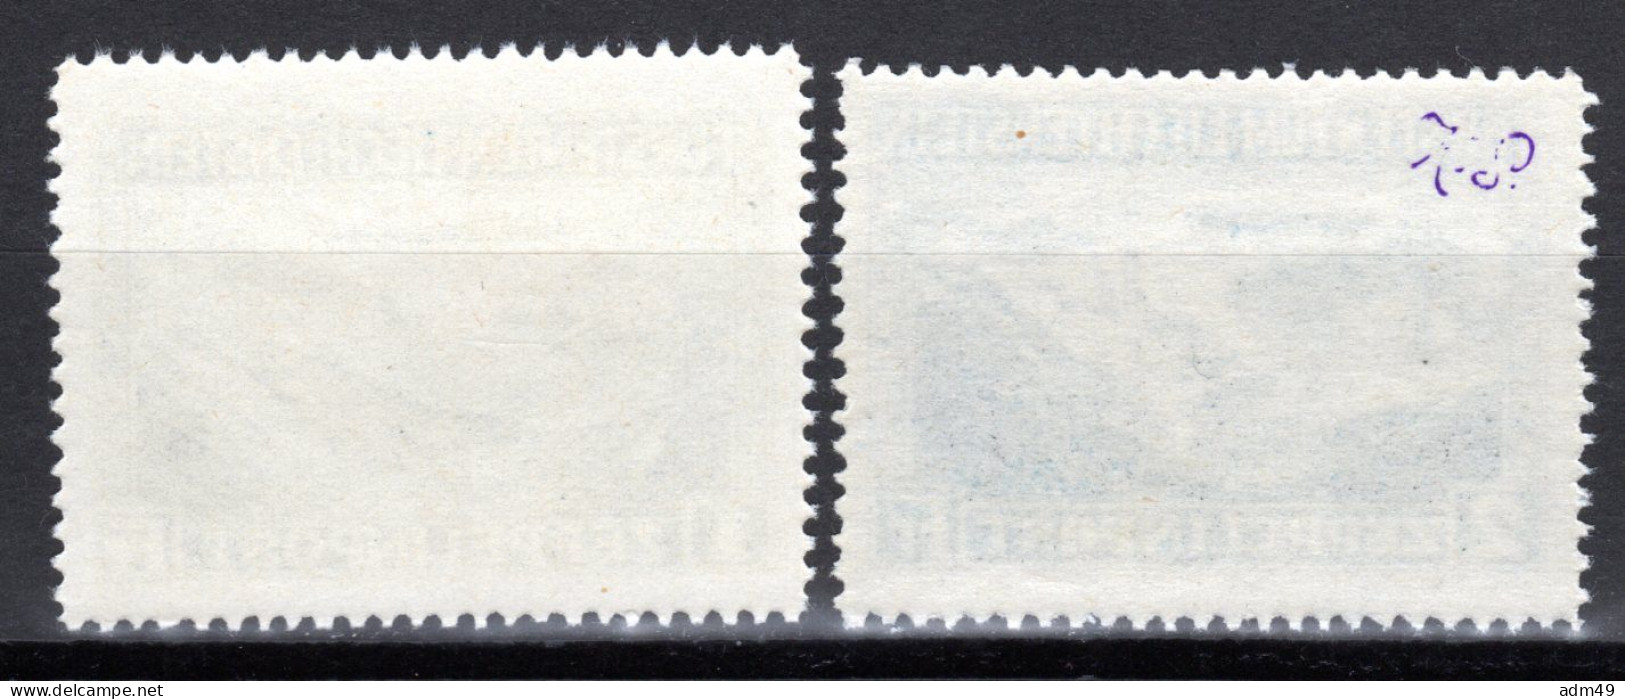 LIECHTENSTEIN, Flugpost 1931 Sonderflugpostmarken Zeppelinfahrt, Postfrisch ** - Poste Aérienne